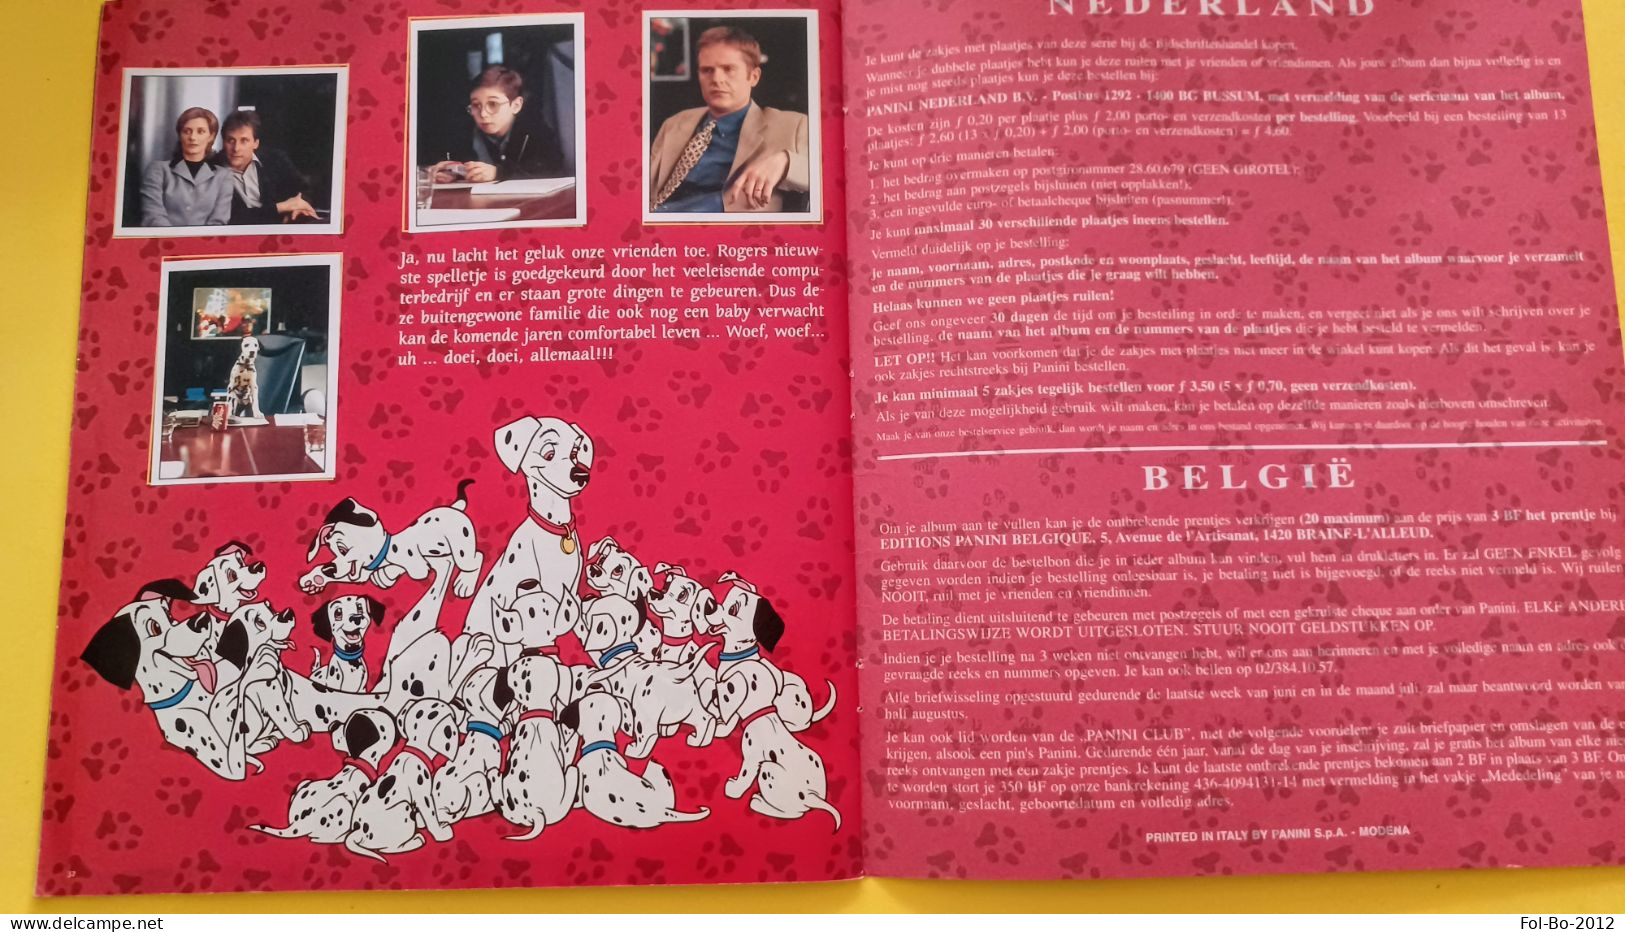 101 echte dalmatiers  La carica dei 101 Disney album completo panini 1997